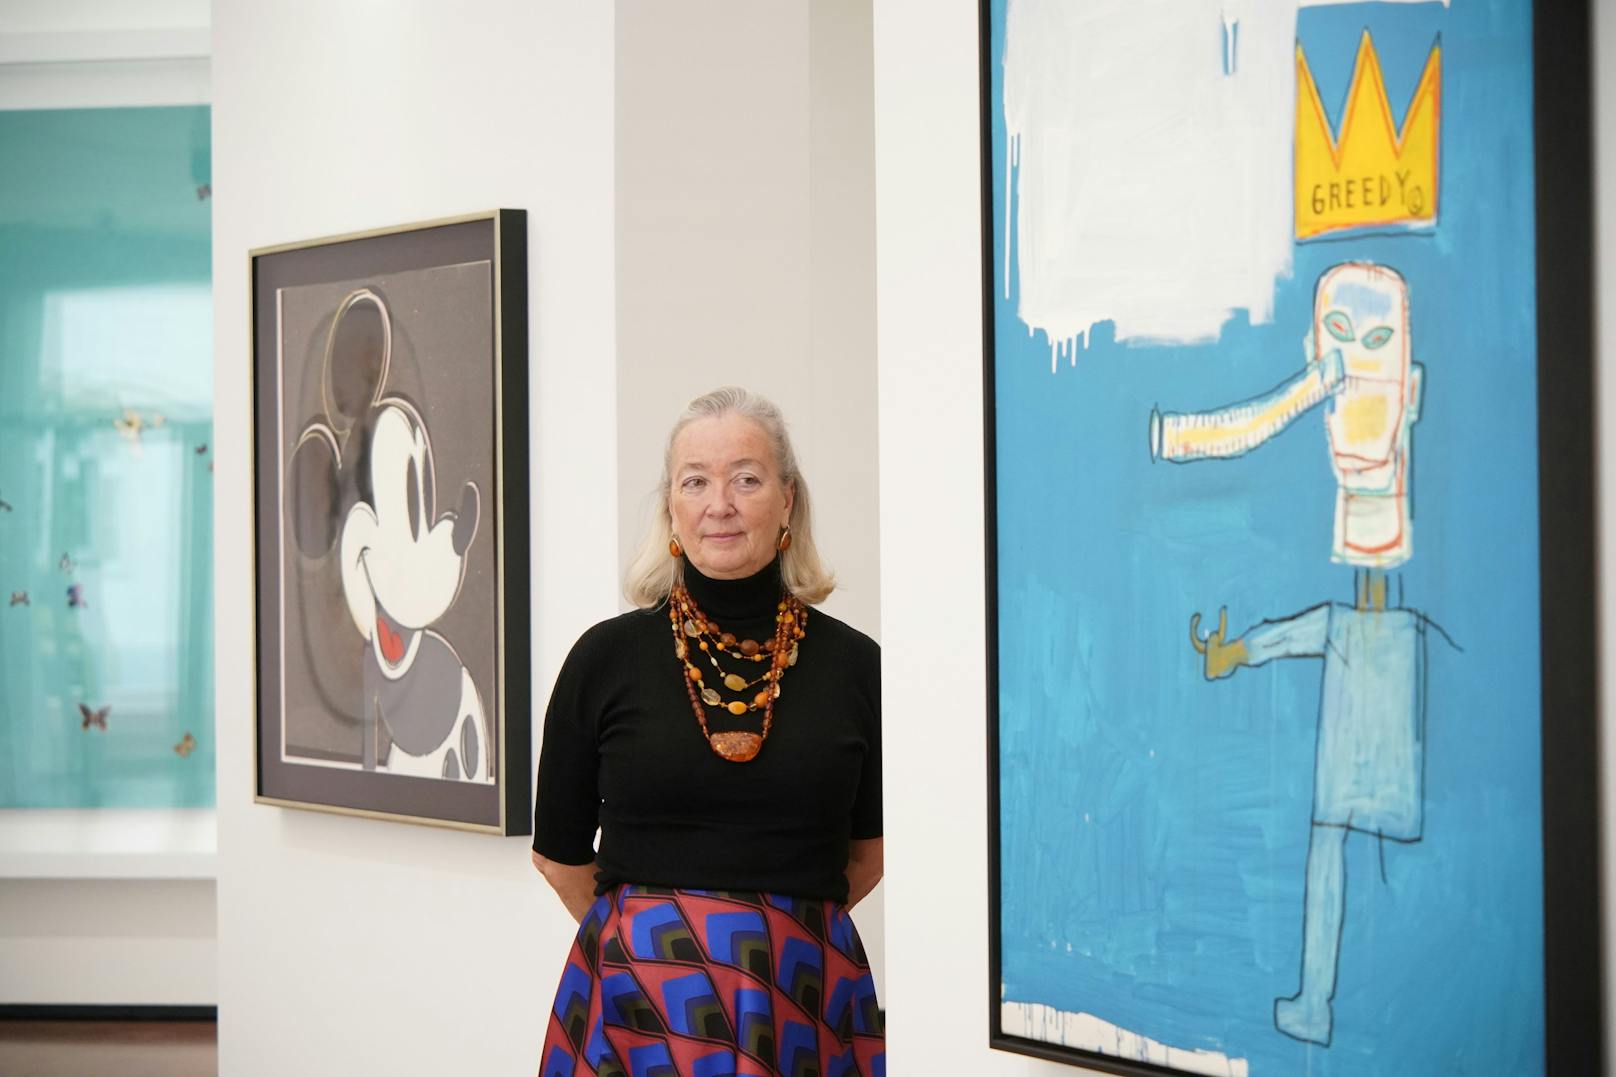 Direktorin Agnes Husslein zwischen Warhol und Basquiat